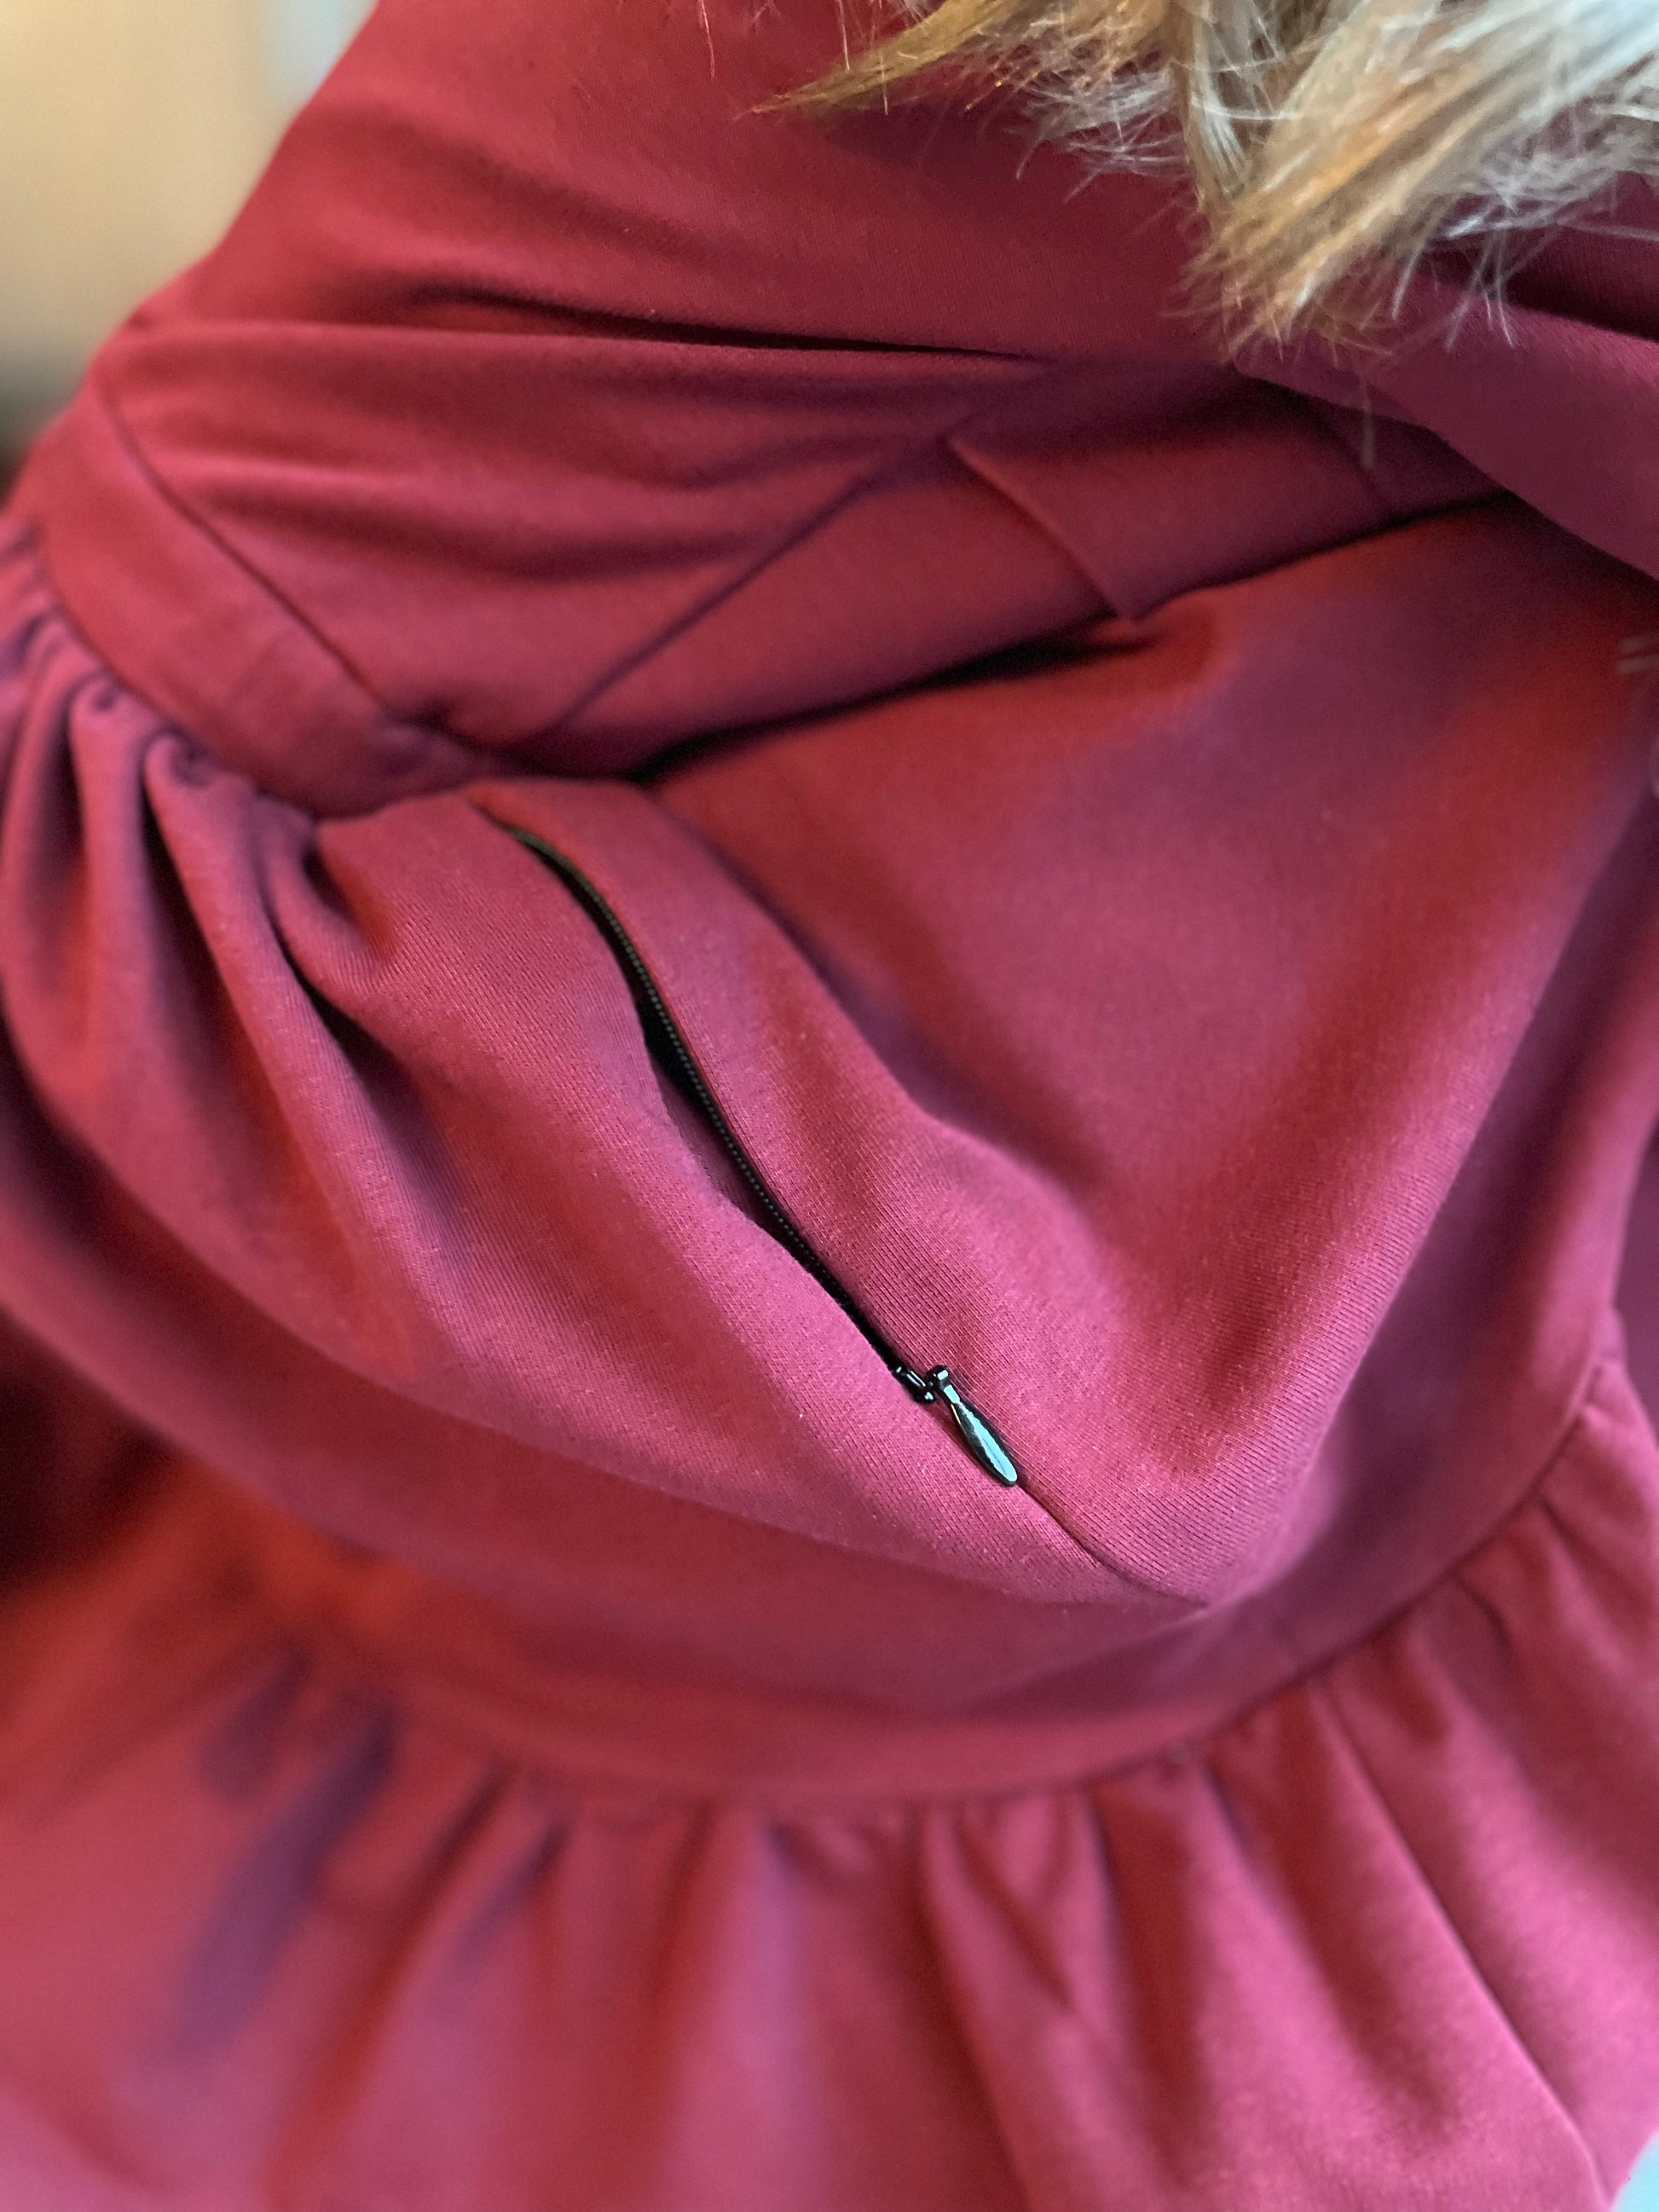 Type 1 Diabetes Clothing - Cotton dress with pockets Bordo | Our Pocket Hero